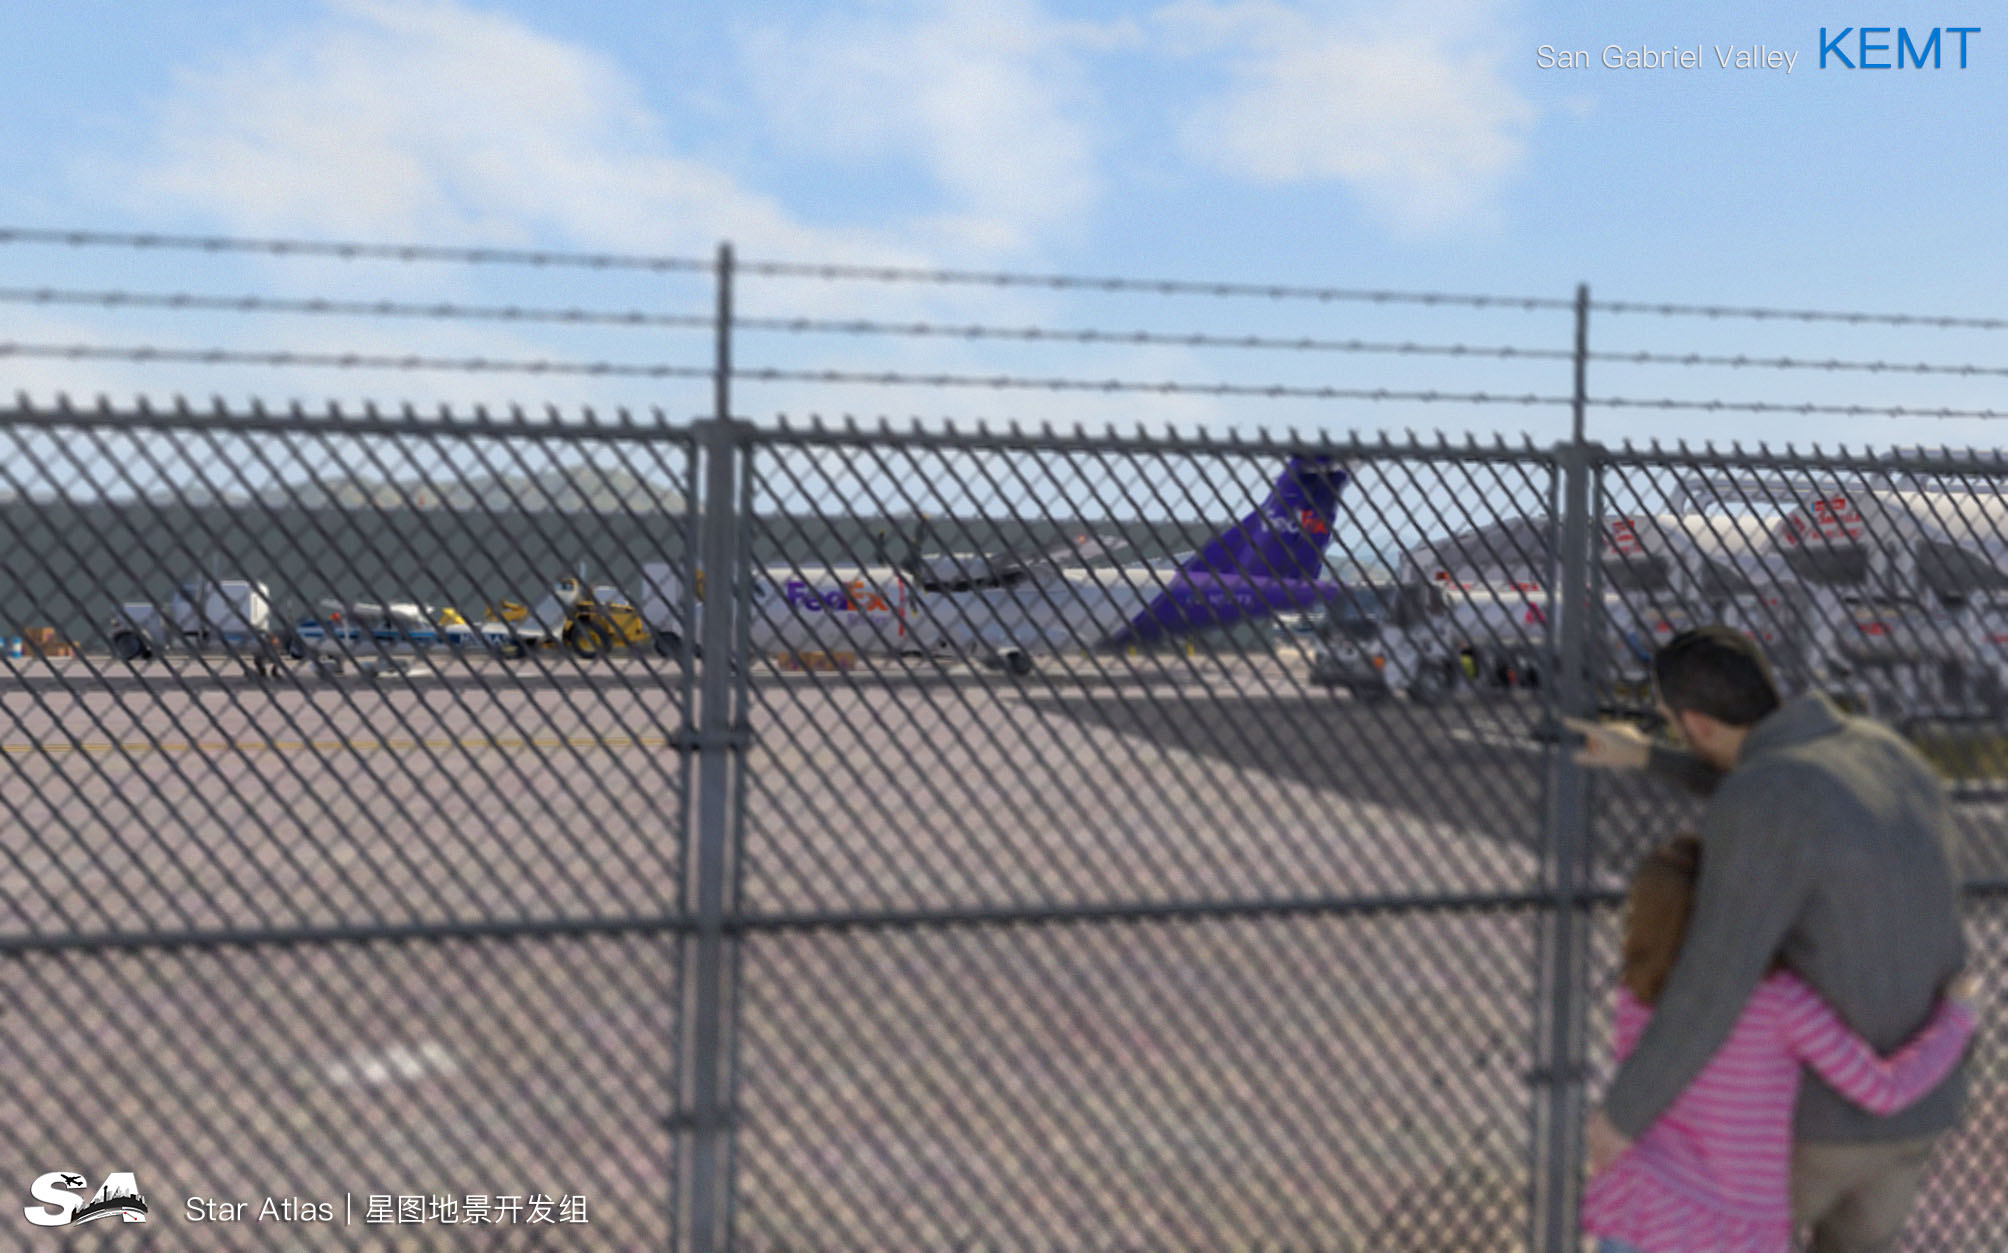 【X-Plane】KEMT-圣盖博谷机场 HD 1.0-7965 